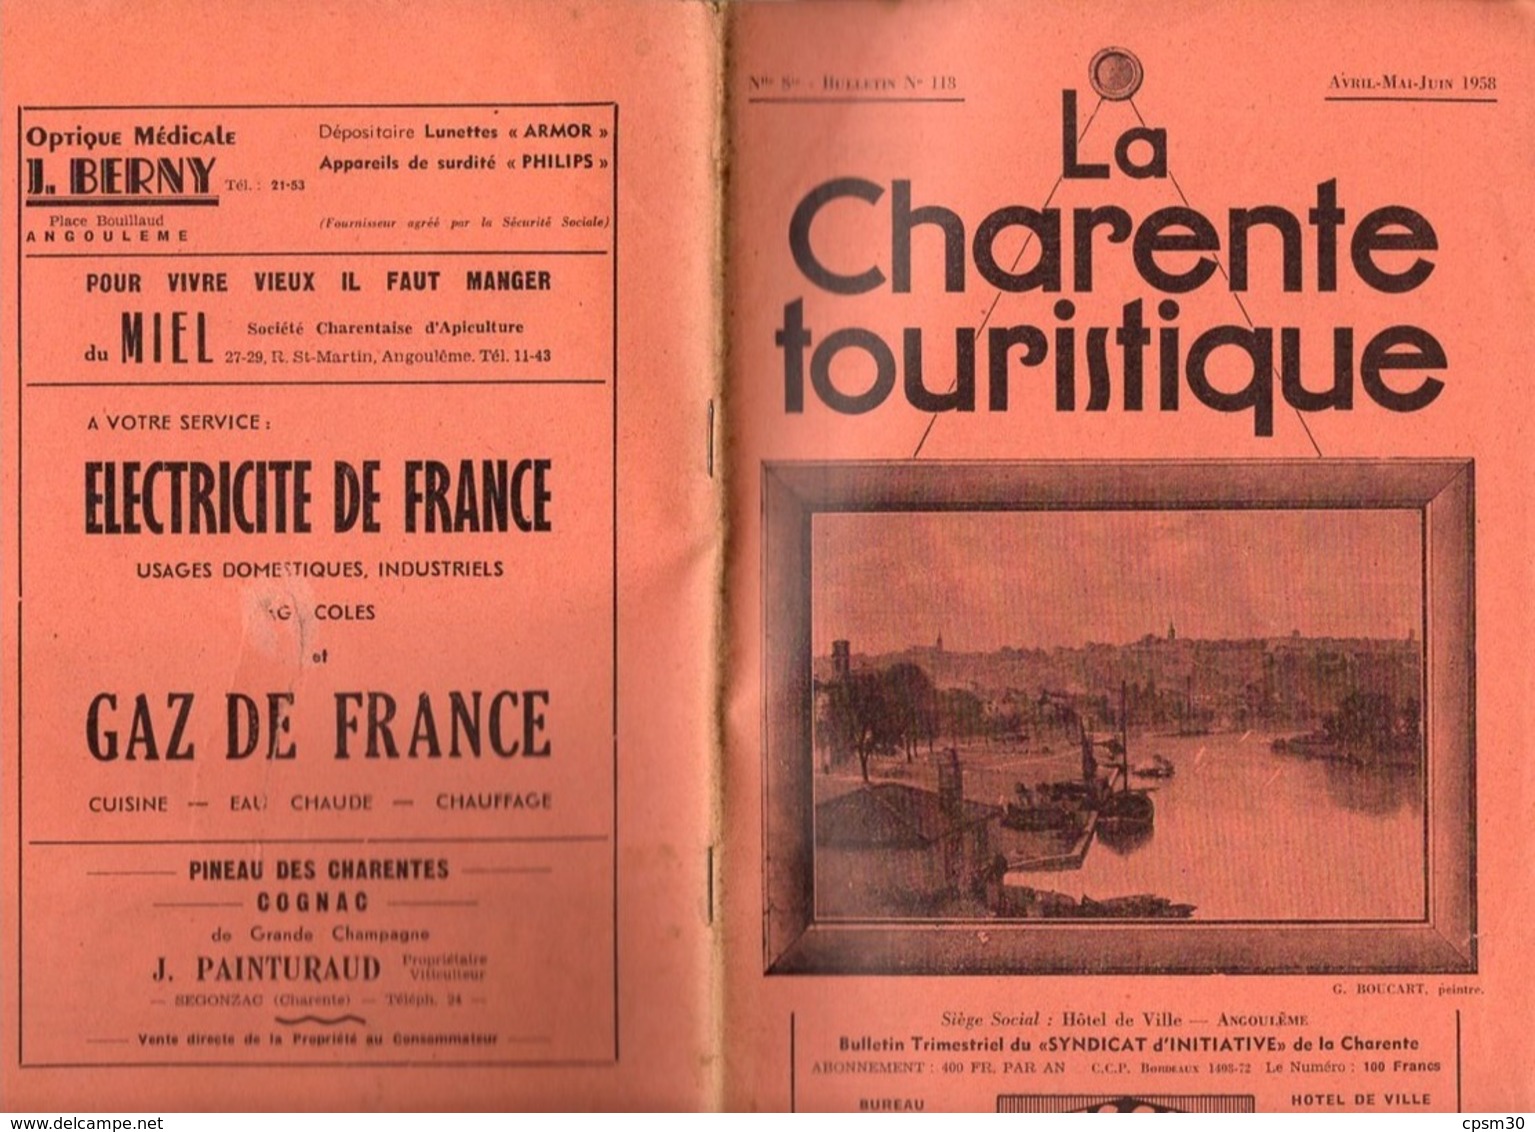 Revues "La Charente Touristique" six revues n° 105, 111, 117, 118, 120 et 123, 1955 à 1959